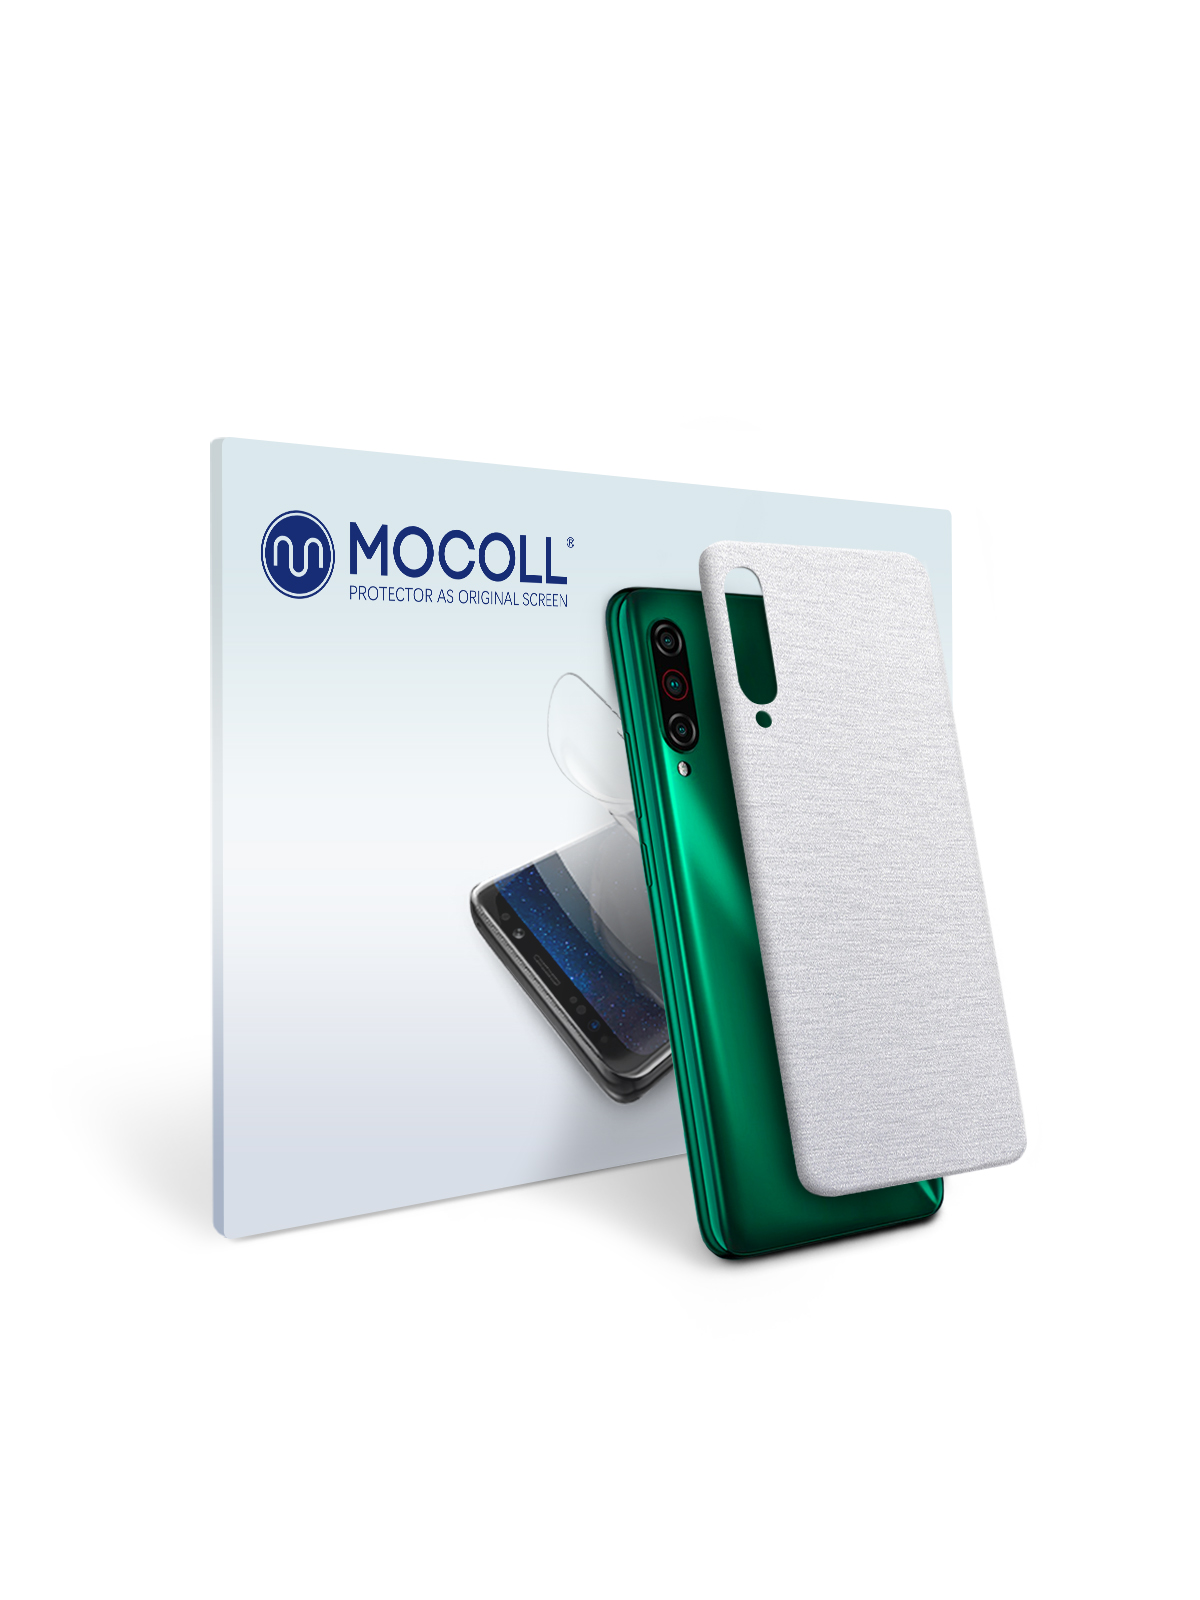 

Пленка защитная MOCOLL для задней панели Meizu M5 Металлик Серебристый